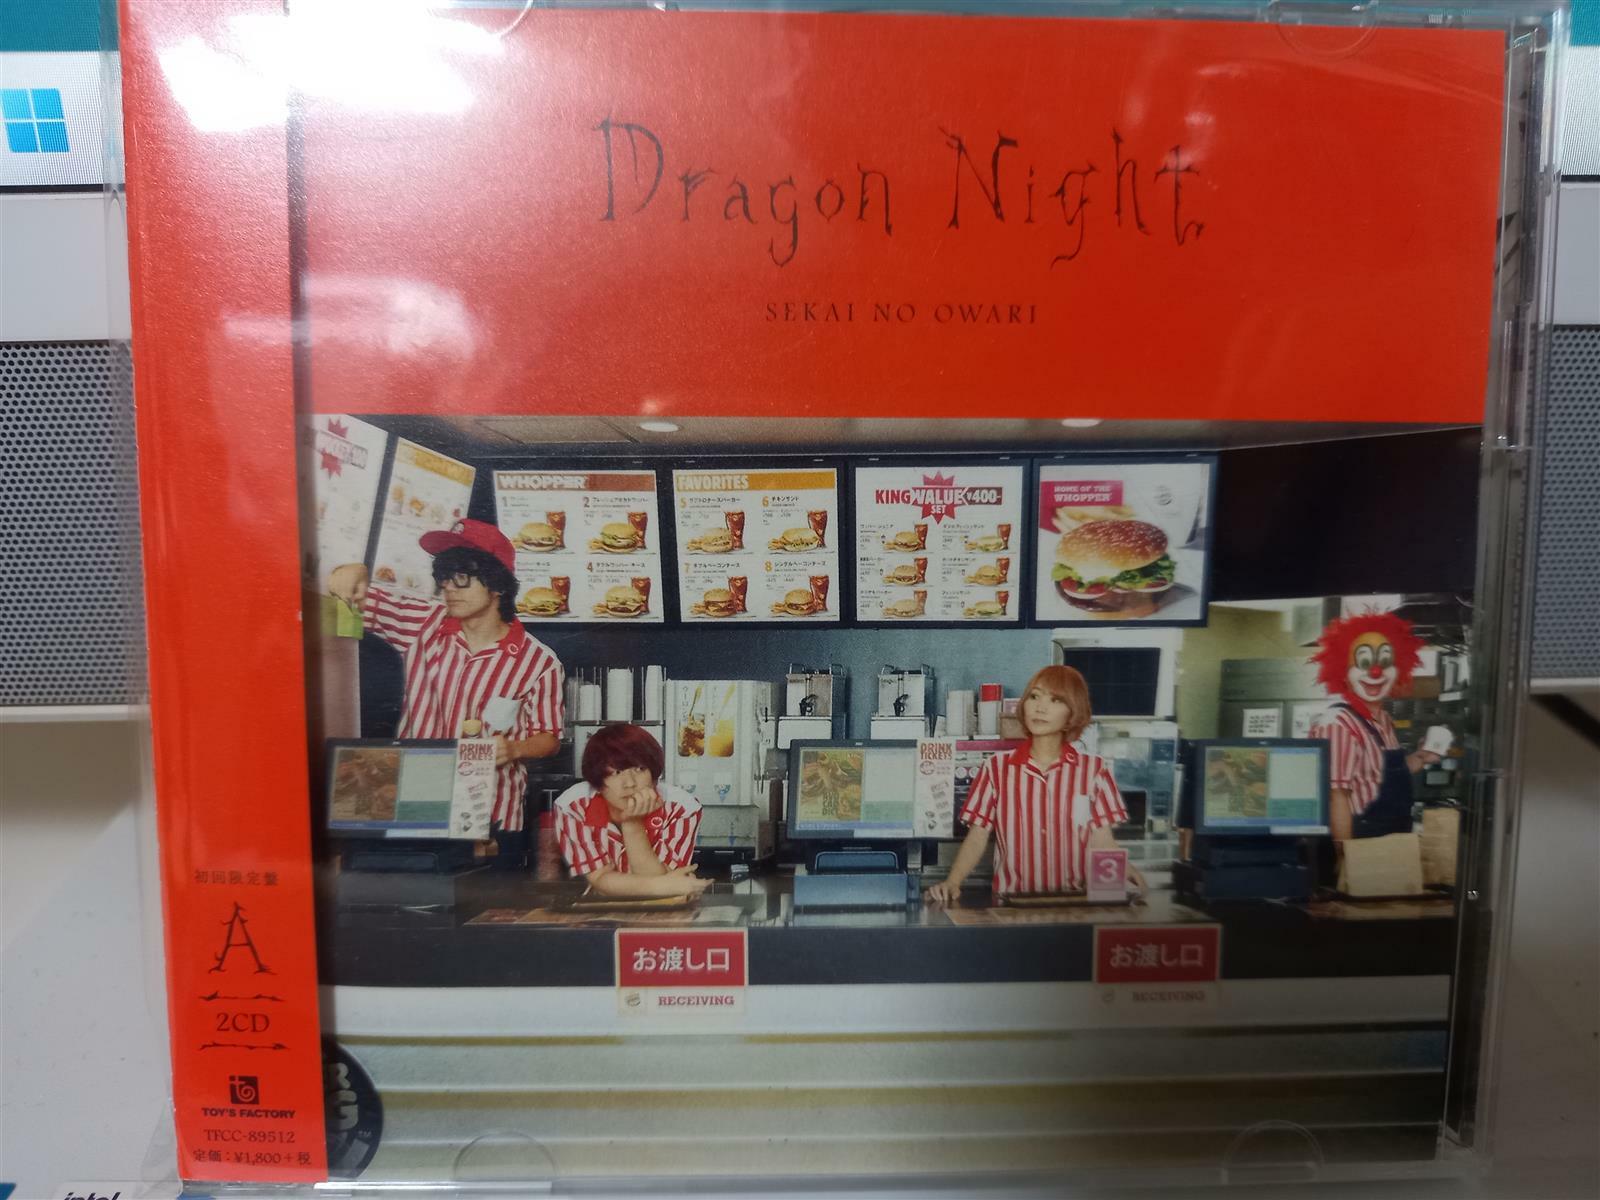 [중고] Sekai No Owari ^Dragon Night^ CD + Live CD...M M/M...일본반...Toy‘s Factory반...